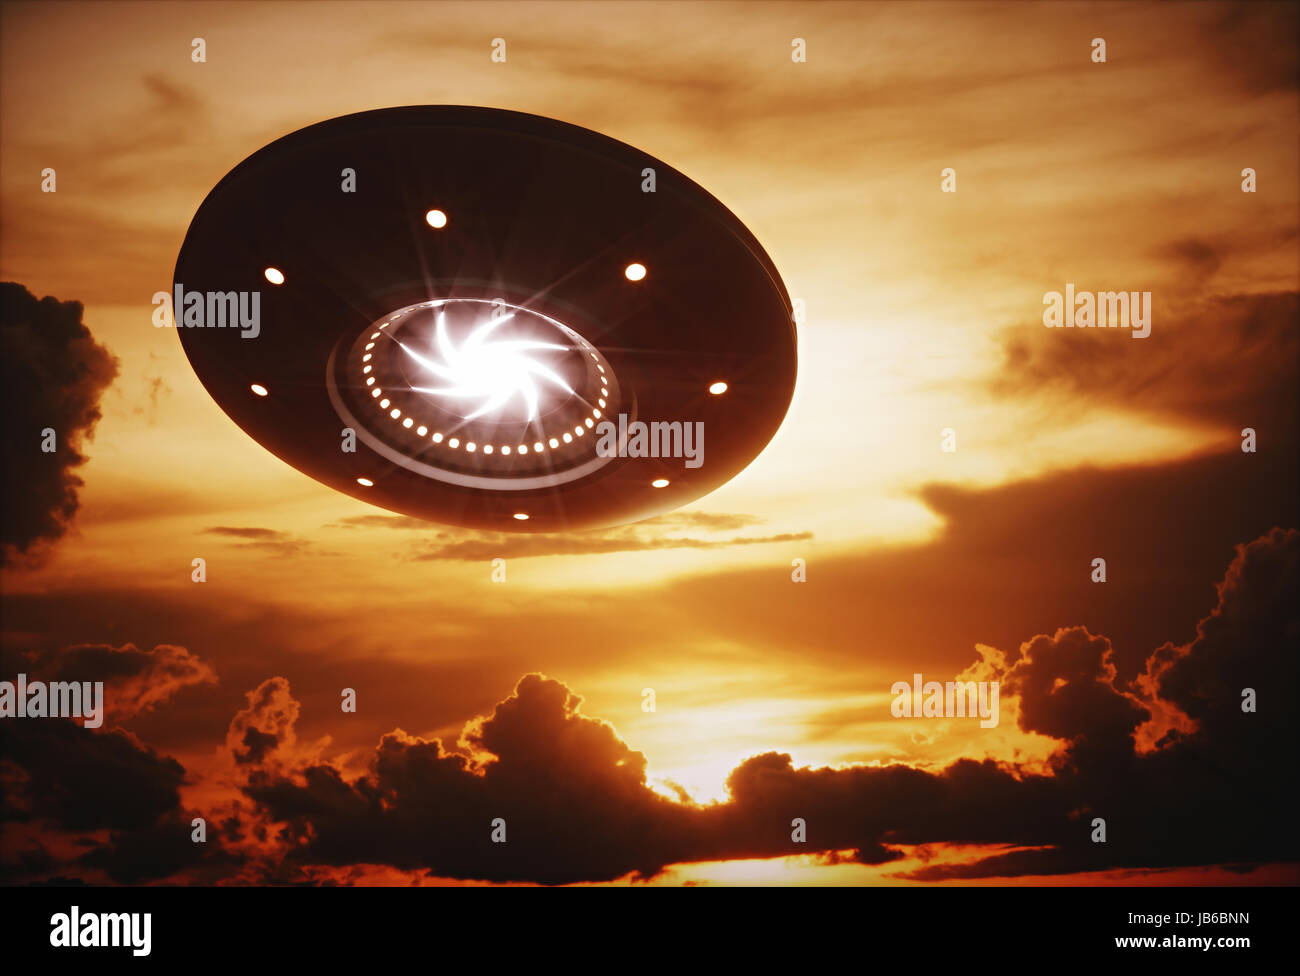 Ufo in sky, backlit, illustration. Stock Photo